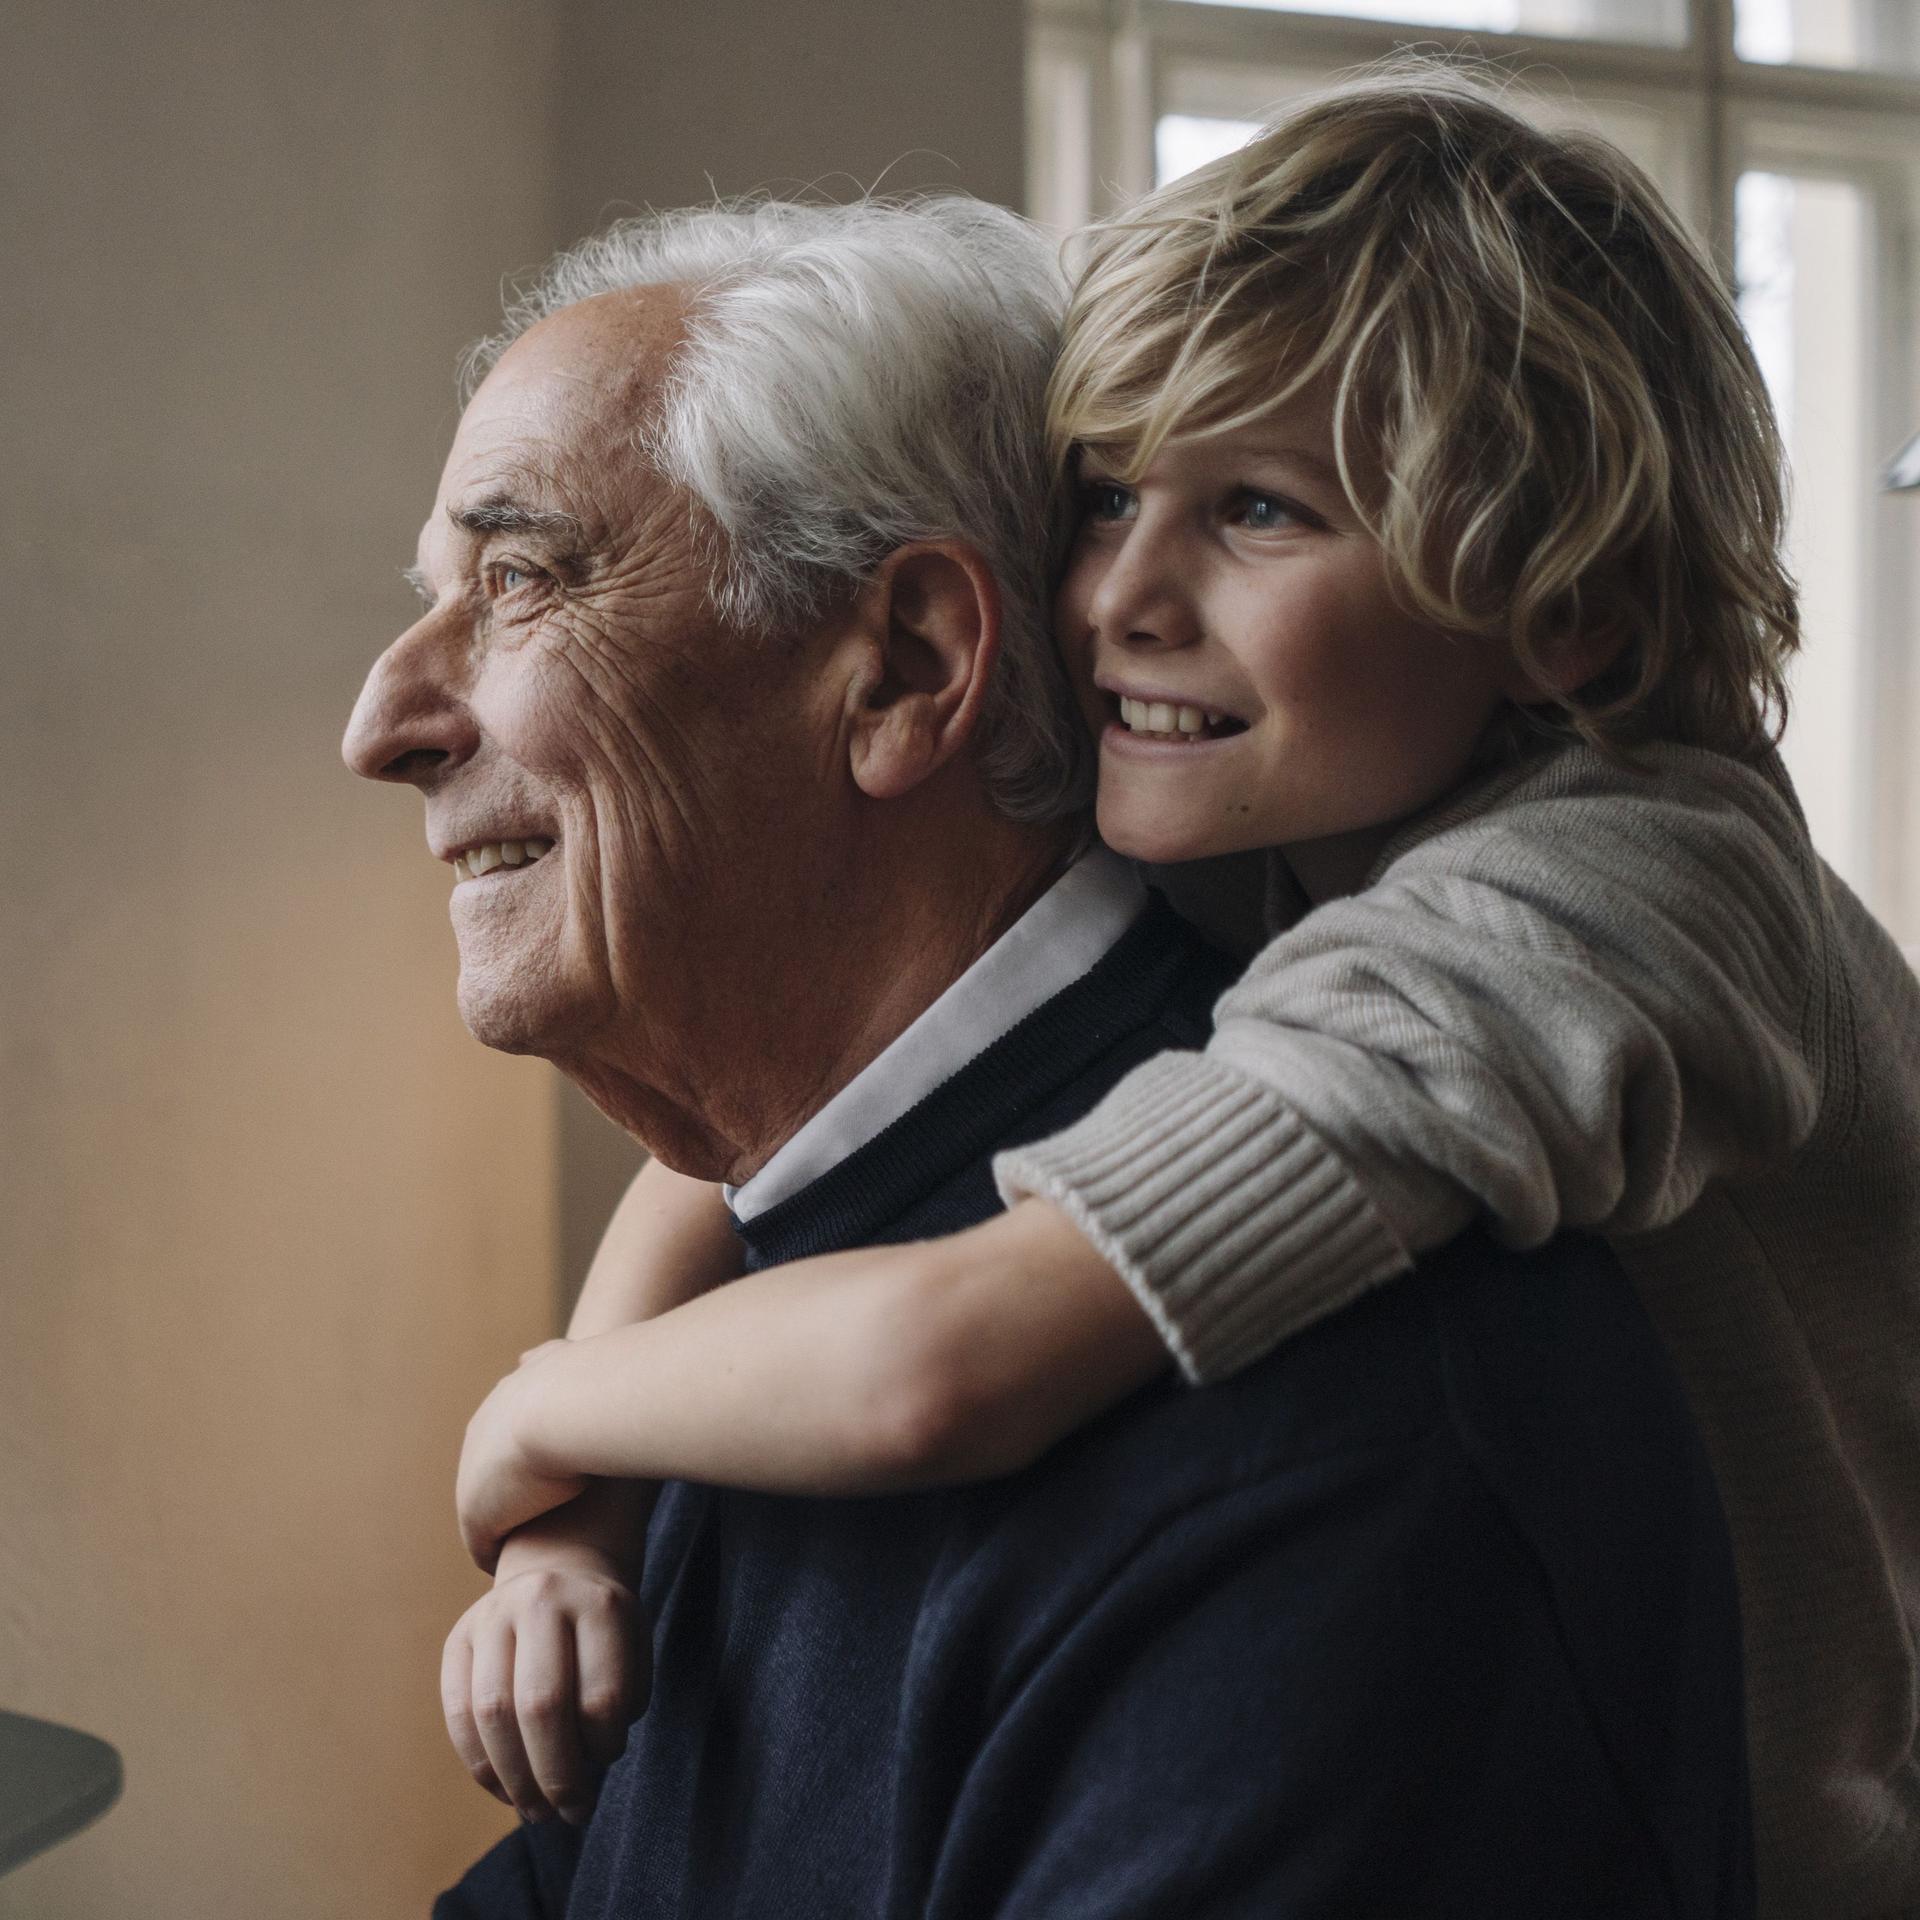 Glücklicher Enkel umarmt Großvater zu Hause